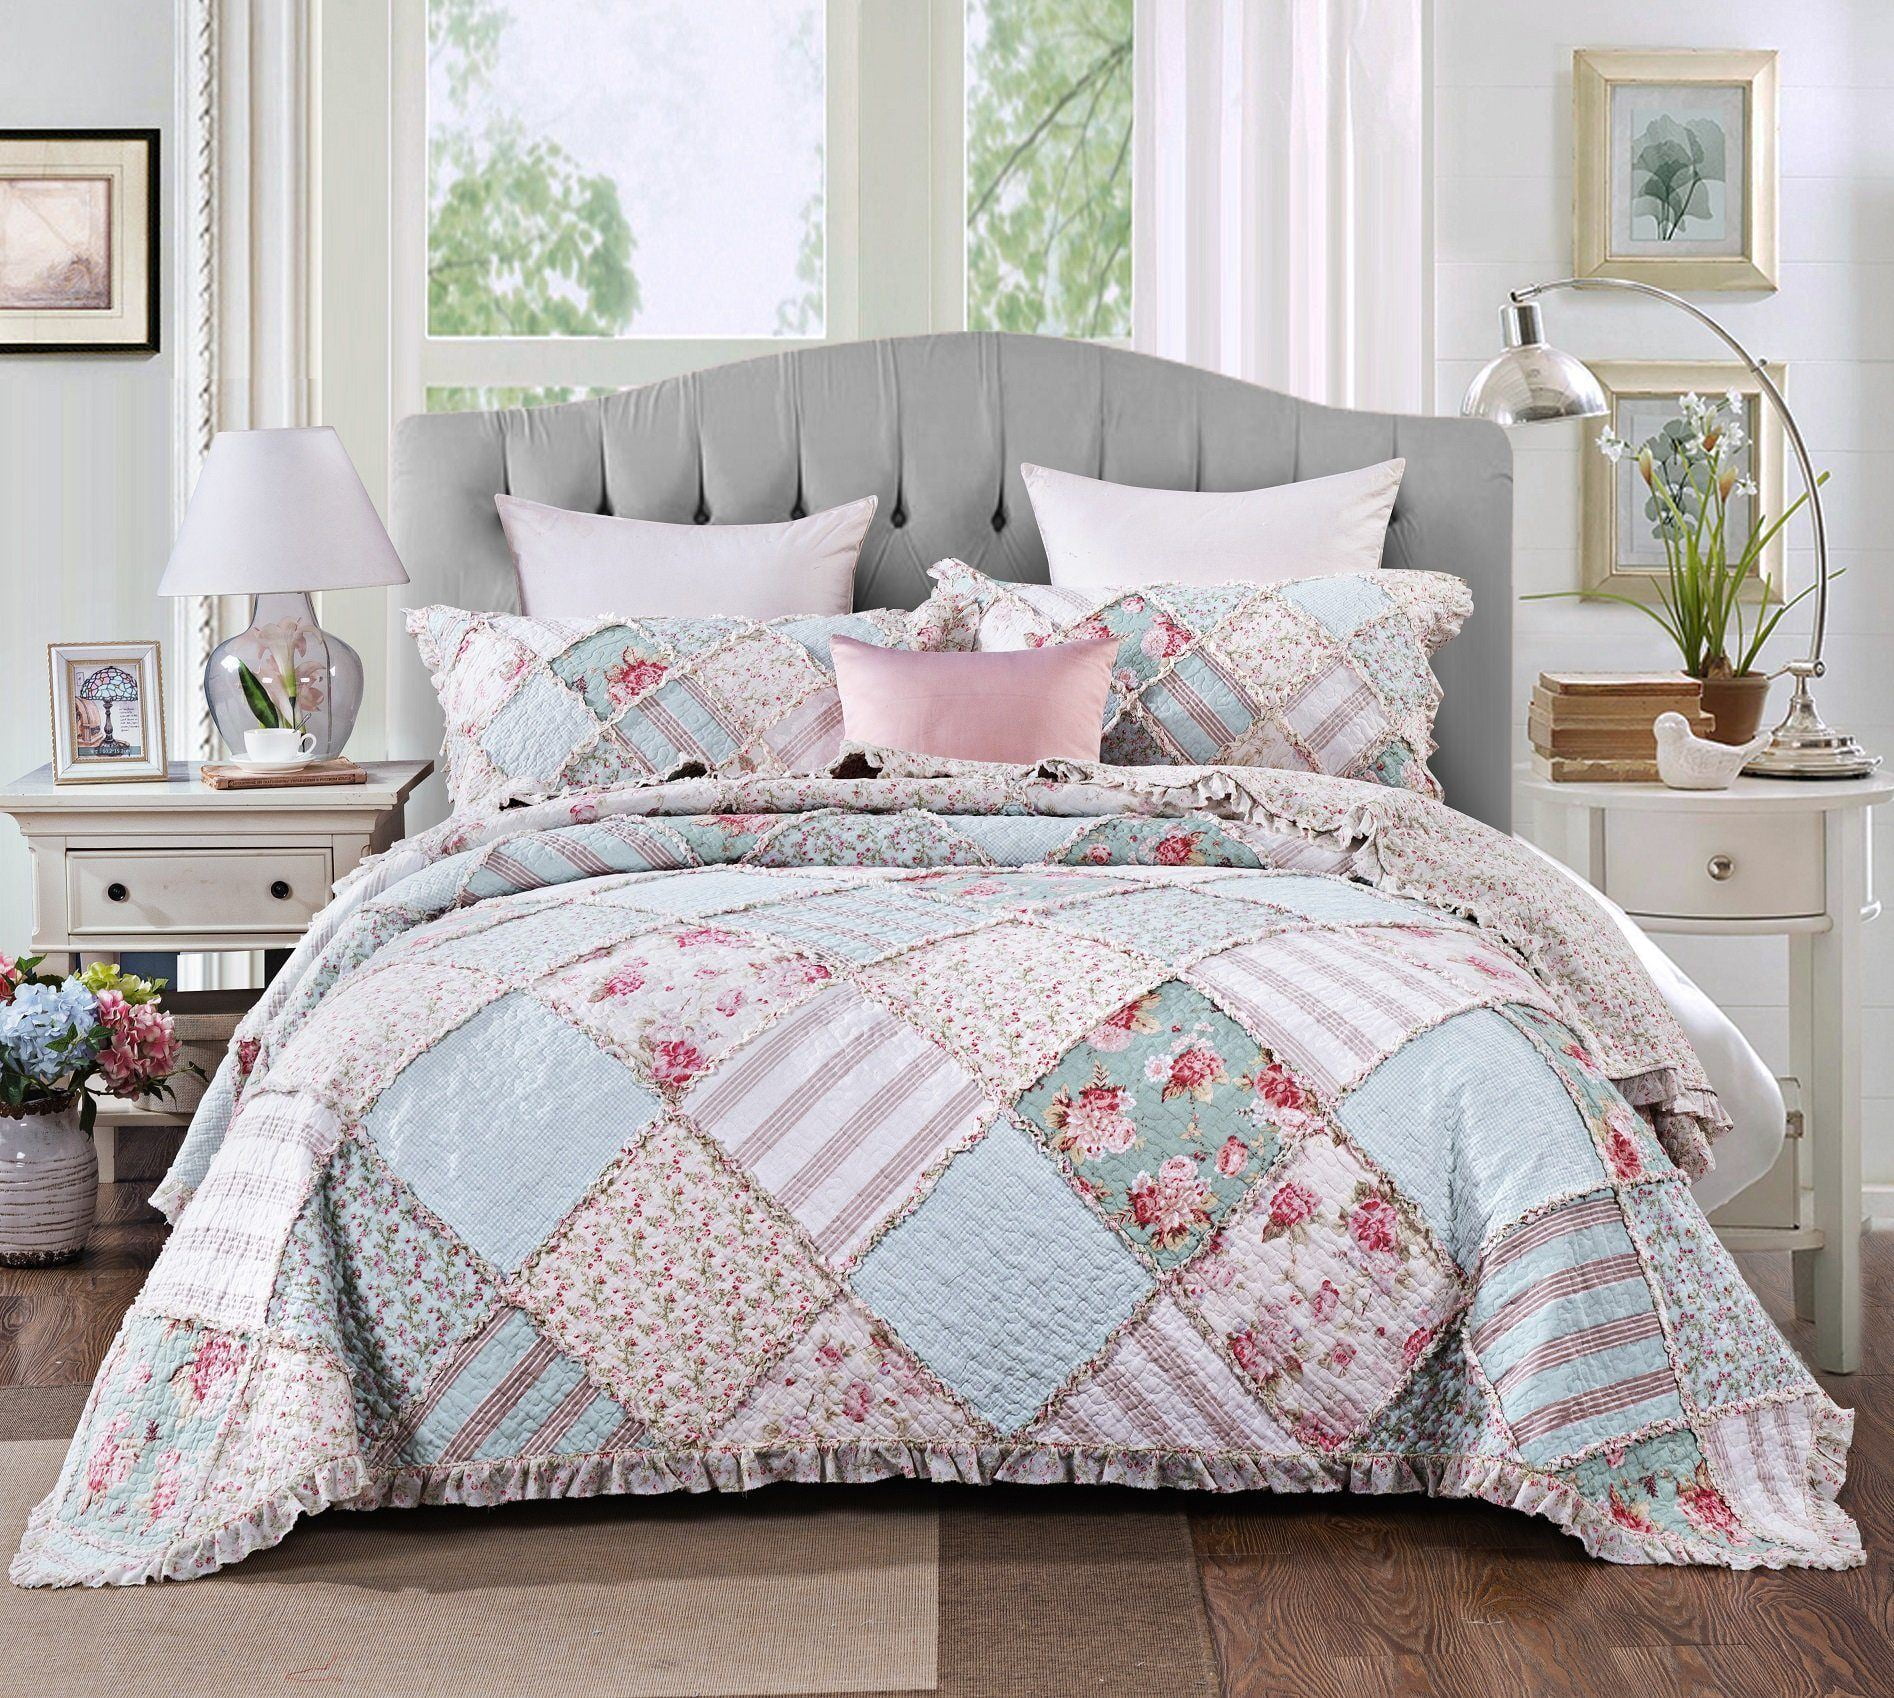 Bedspread Greta Pastel Floral 100%Cotton Reversible Quilt Set Coverlet 